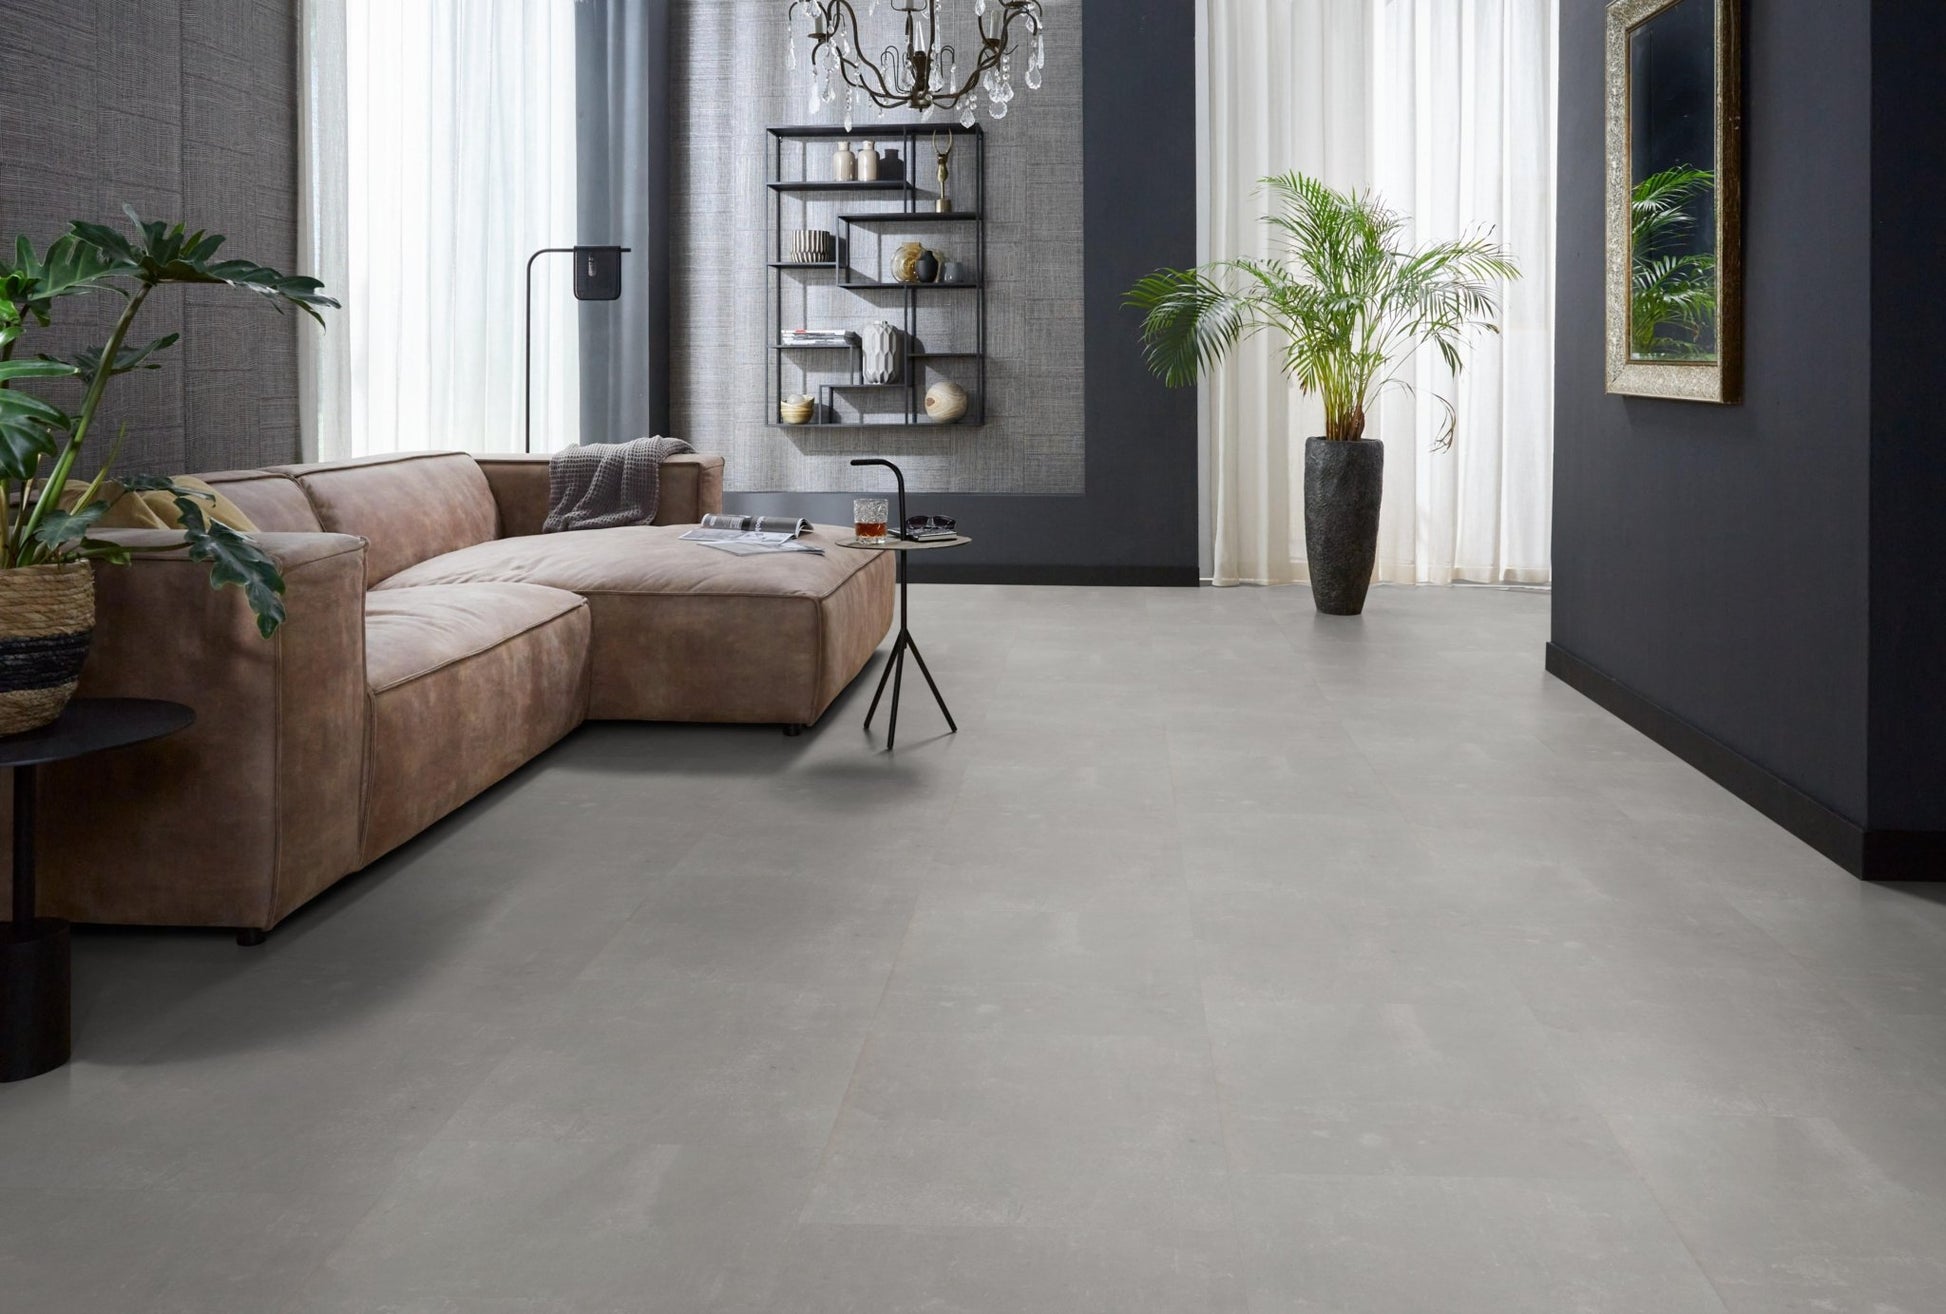 Floorlife Westminster Light Grey 5202 Tegel Dryback PVC - Solza.nl